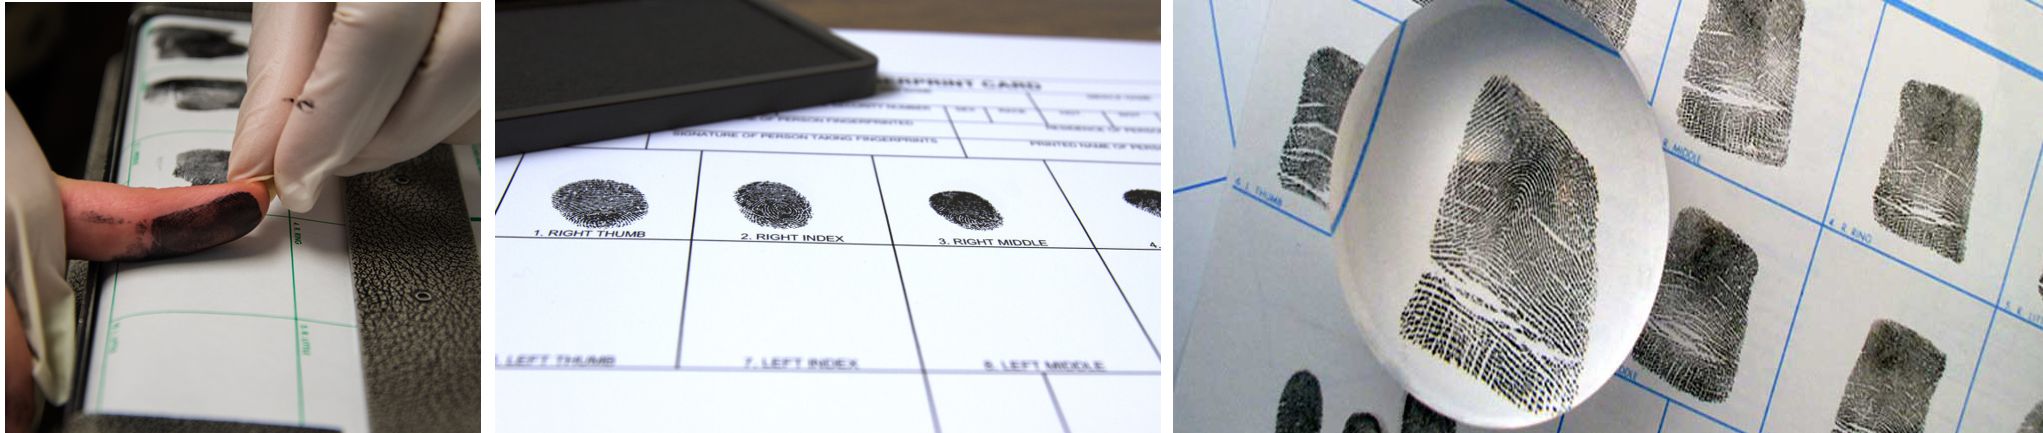 Fingerprint Print Card Holders